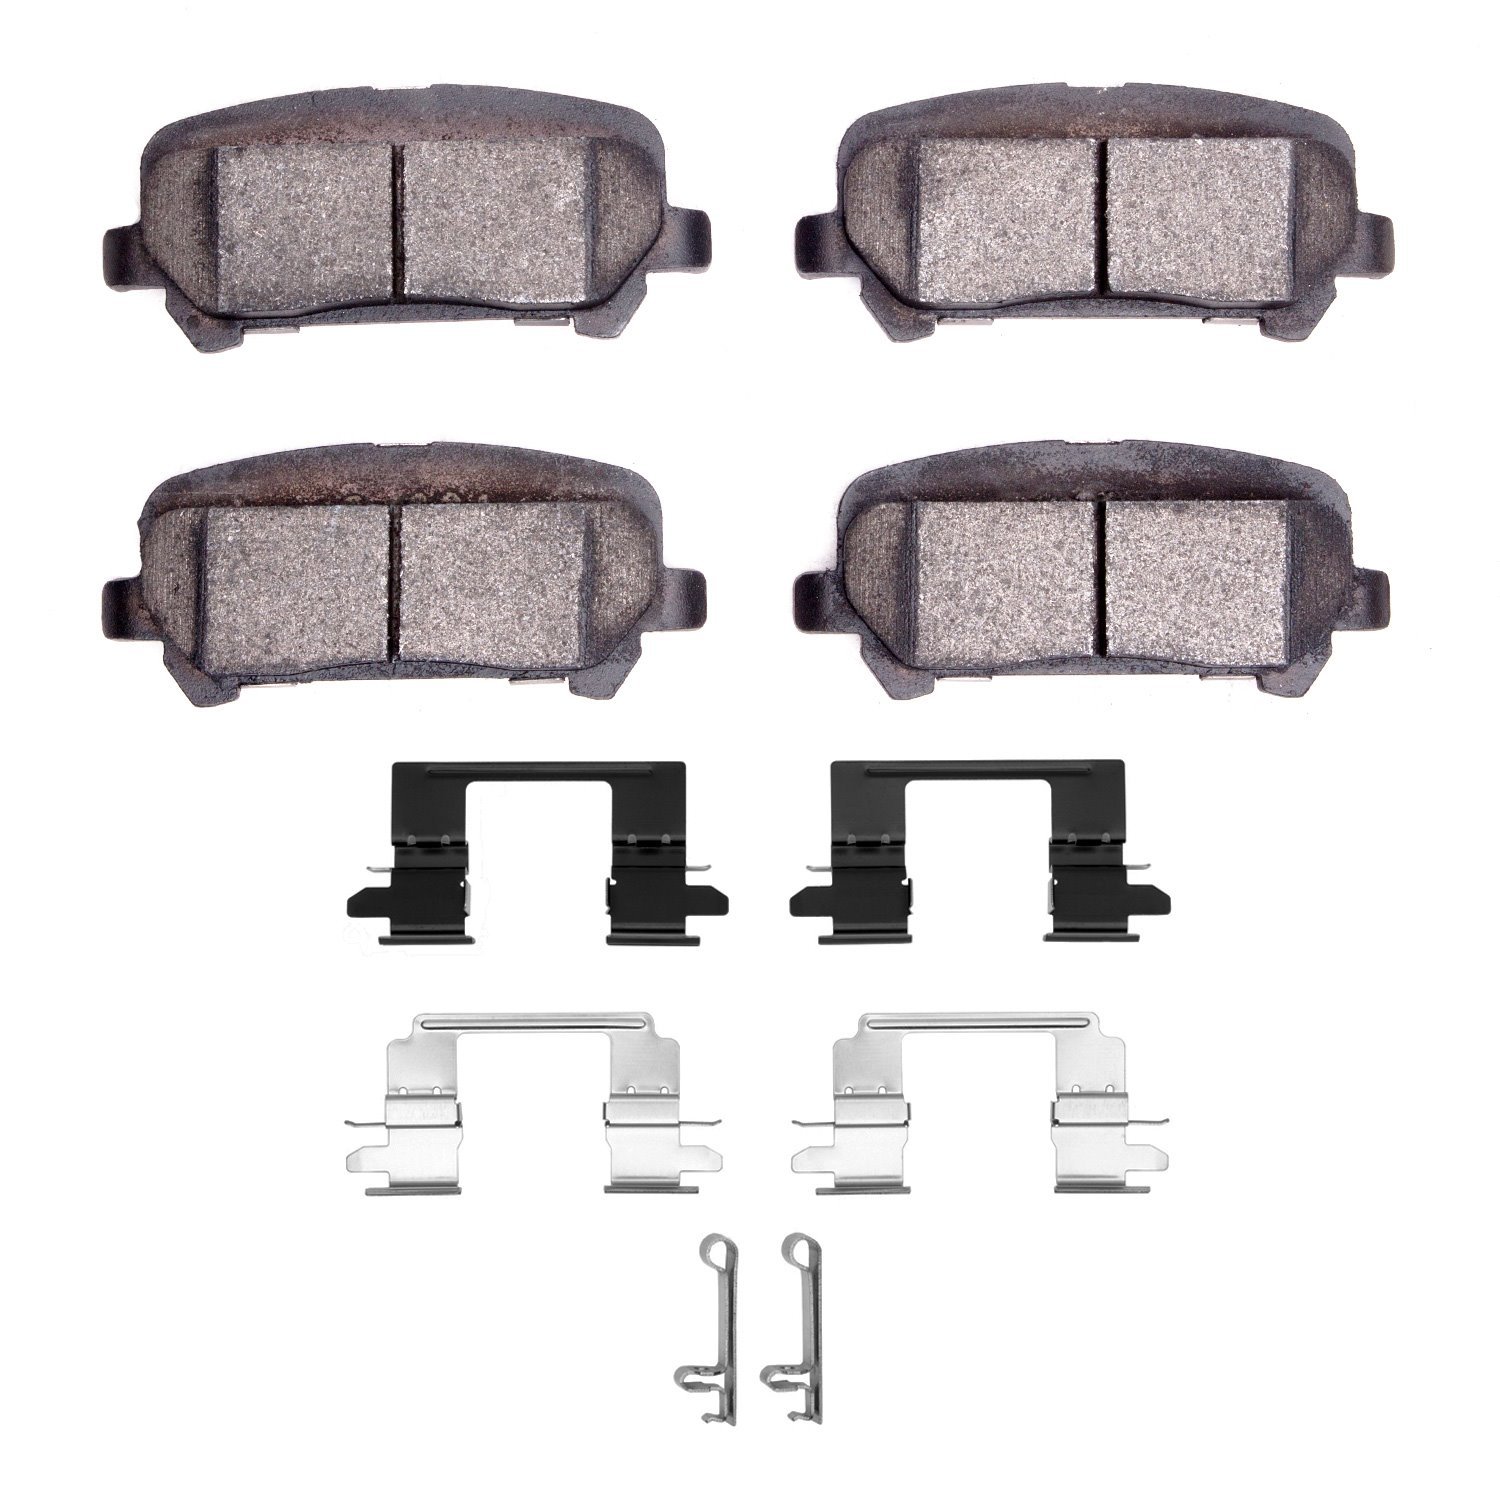 1310-1806-01 3000-Series Ceramic Brake Pads & Hardware Kit, 2015-2020 GM, Position: Rear